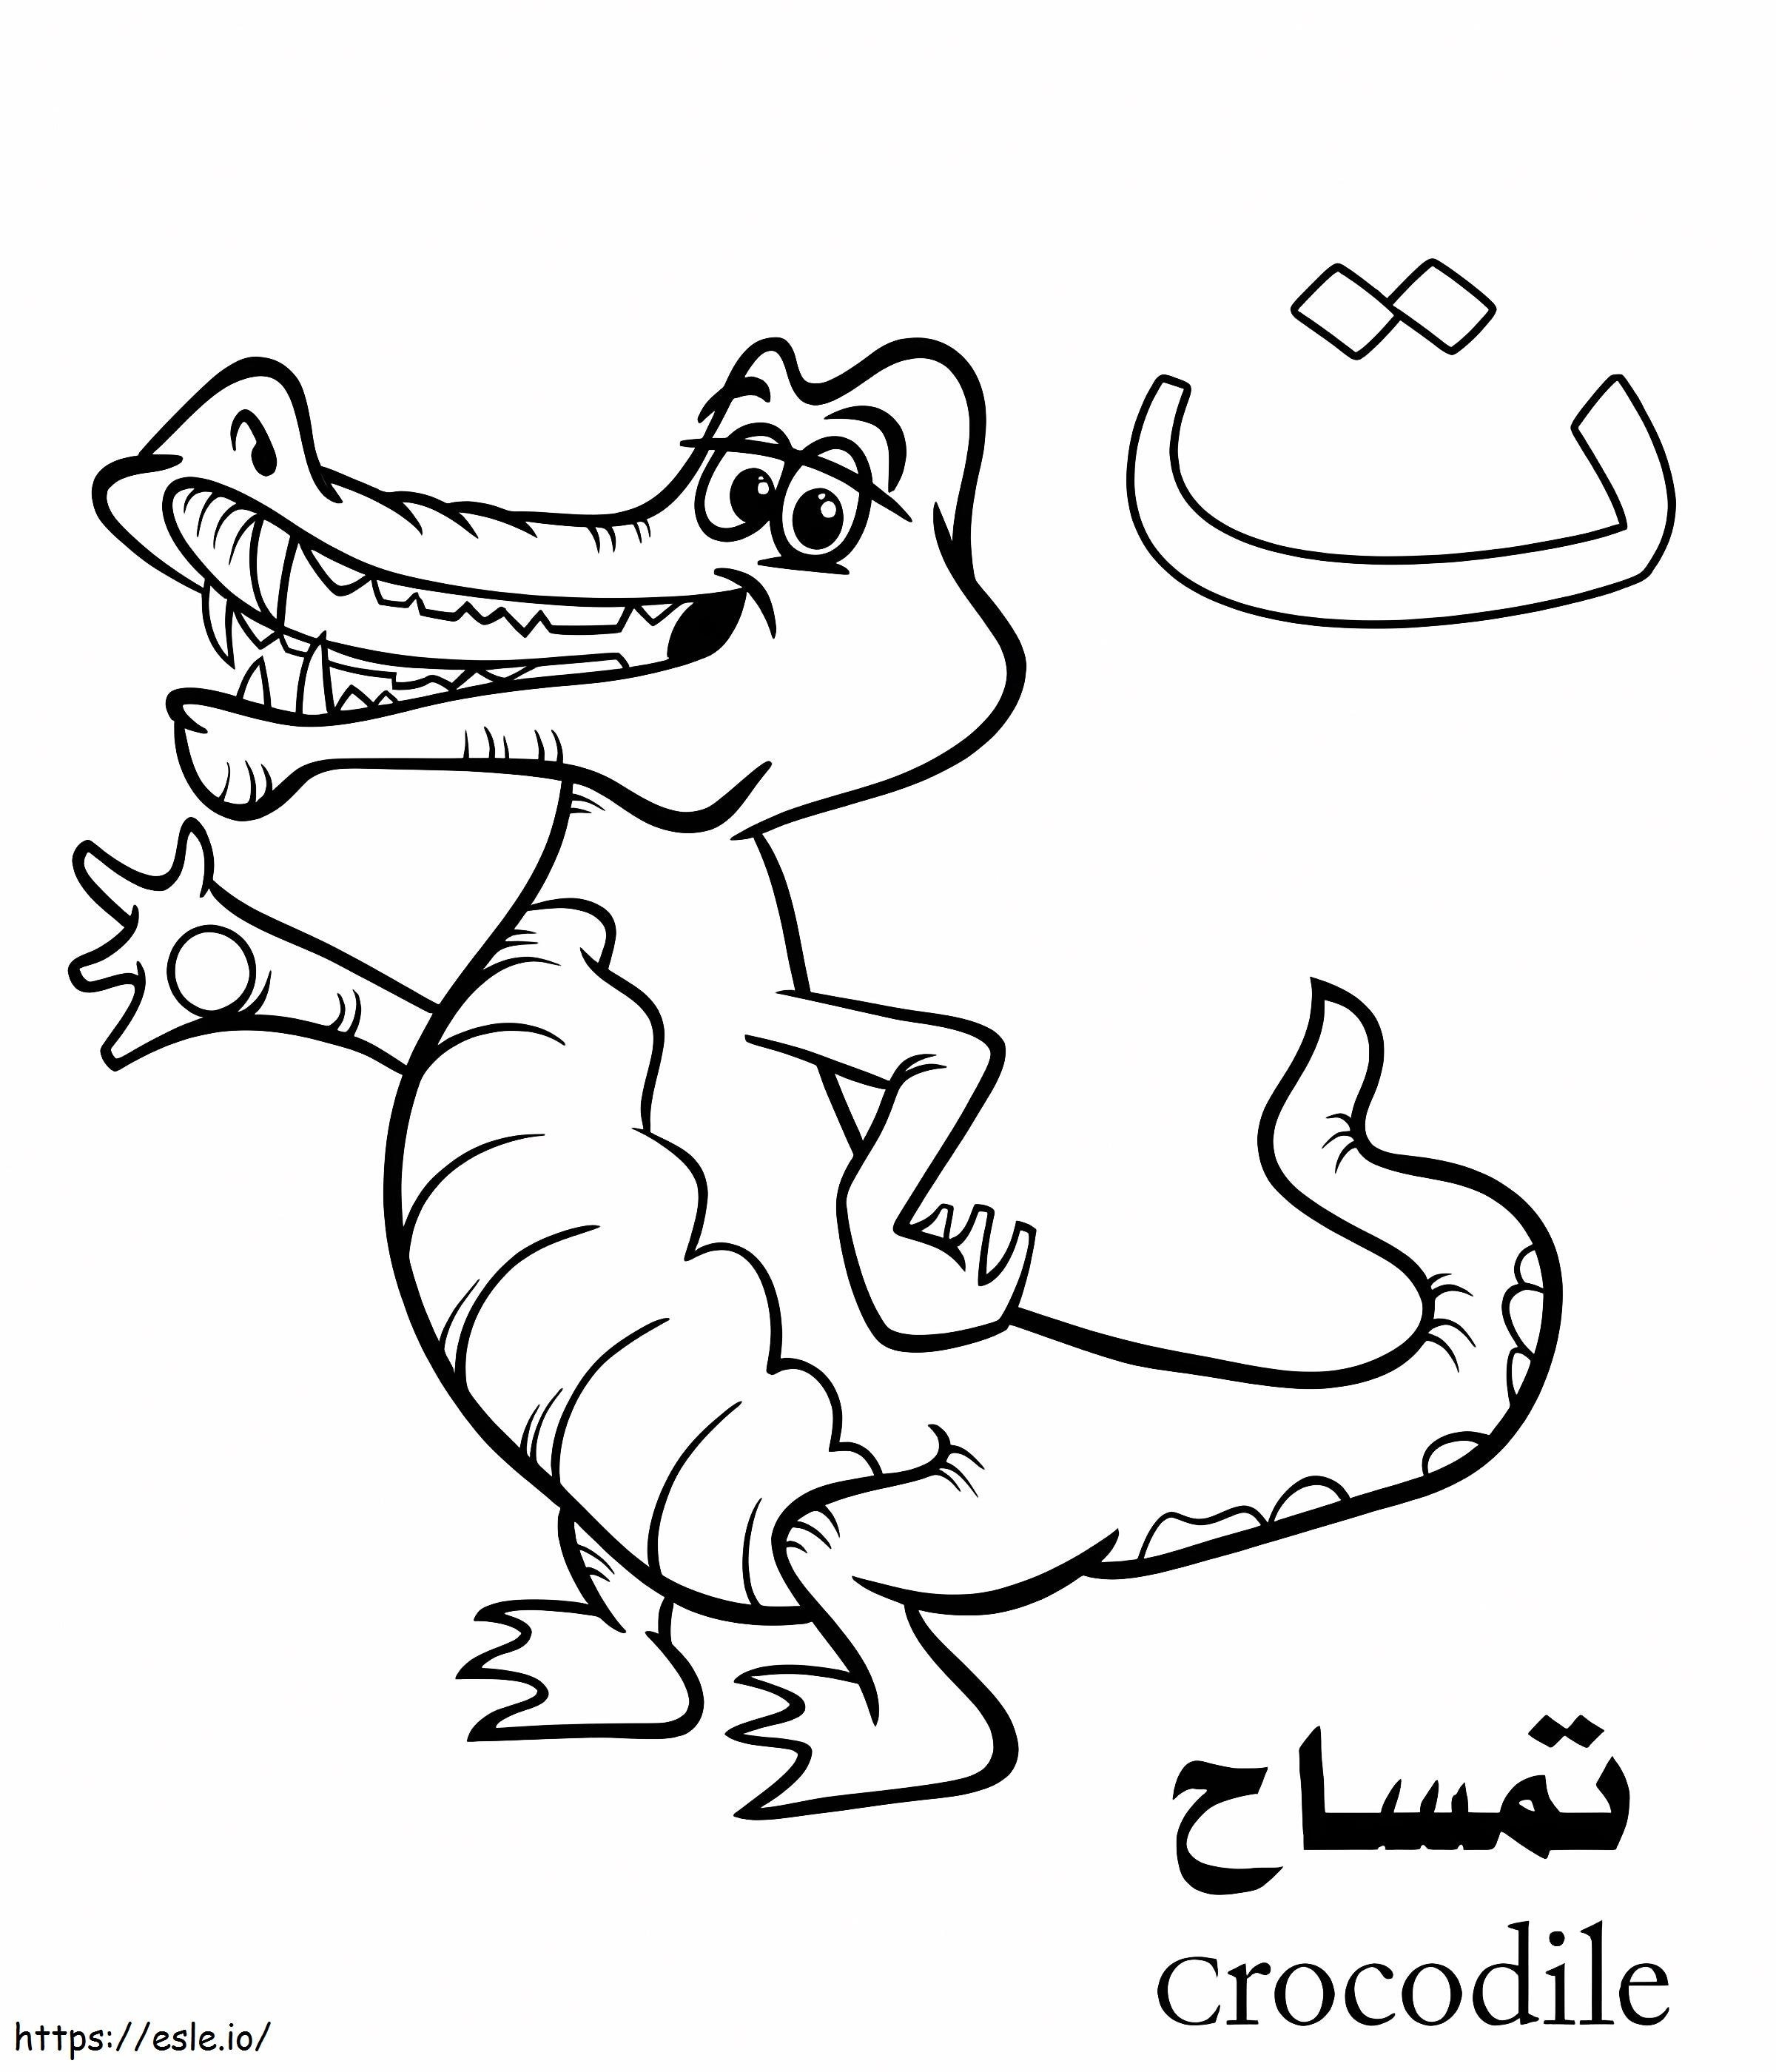 Alfabeto árabe cocodrilo para colorear